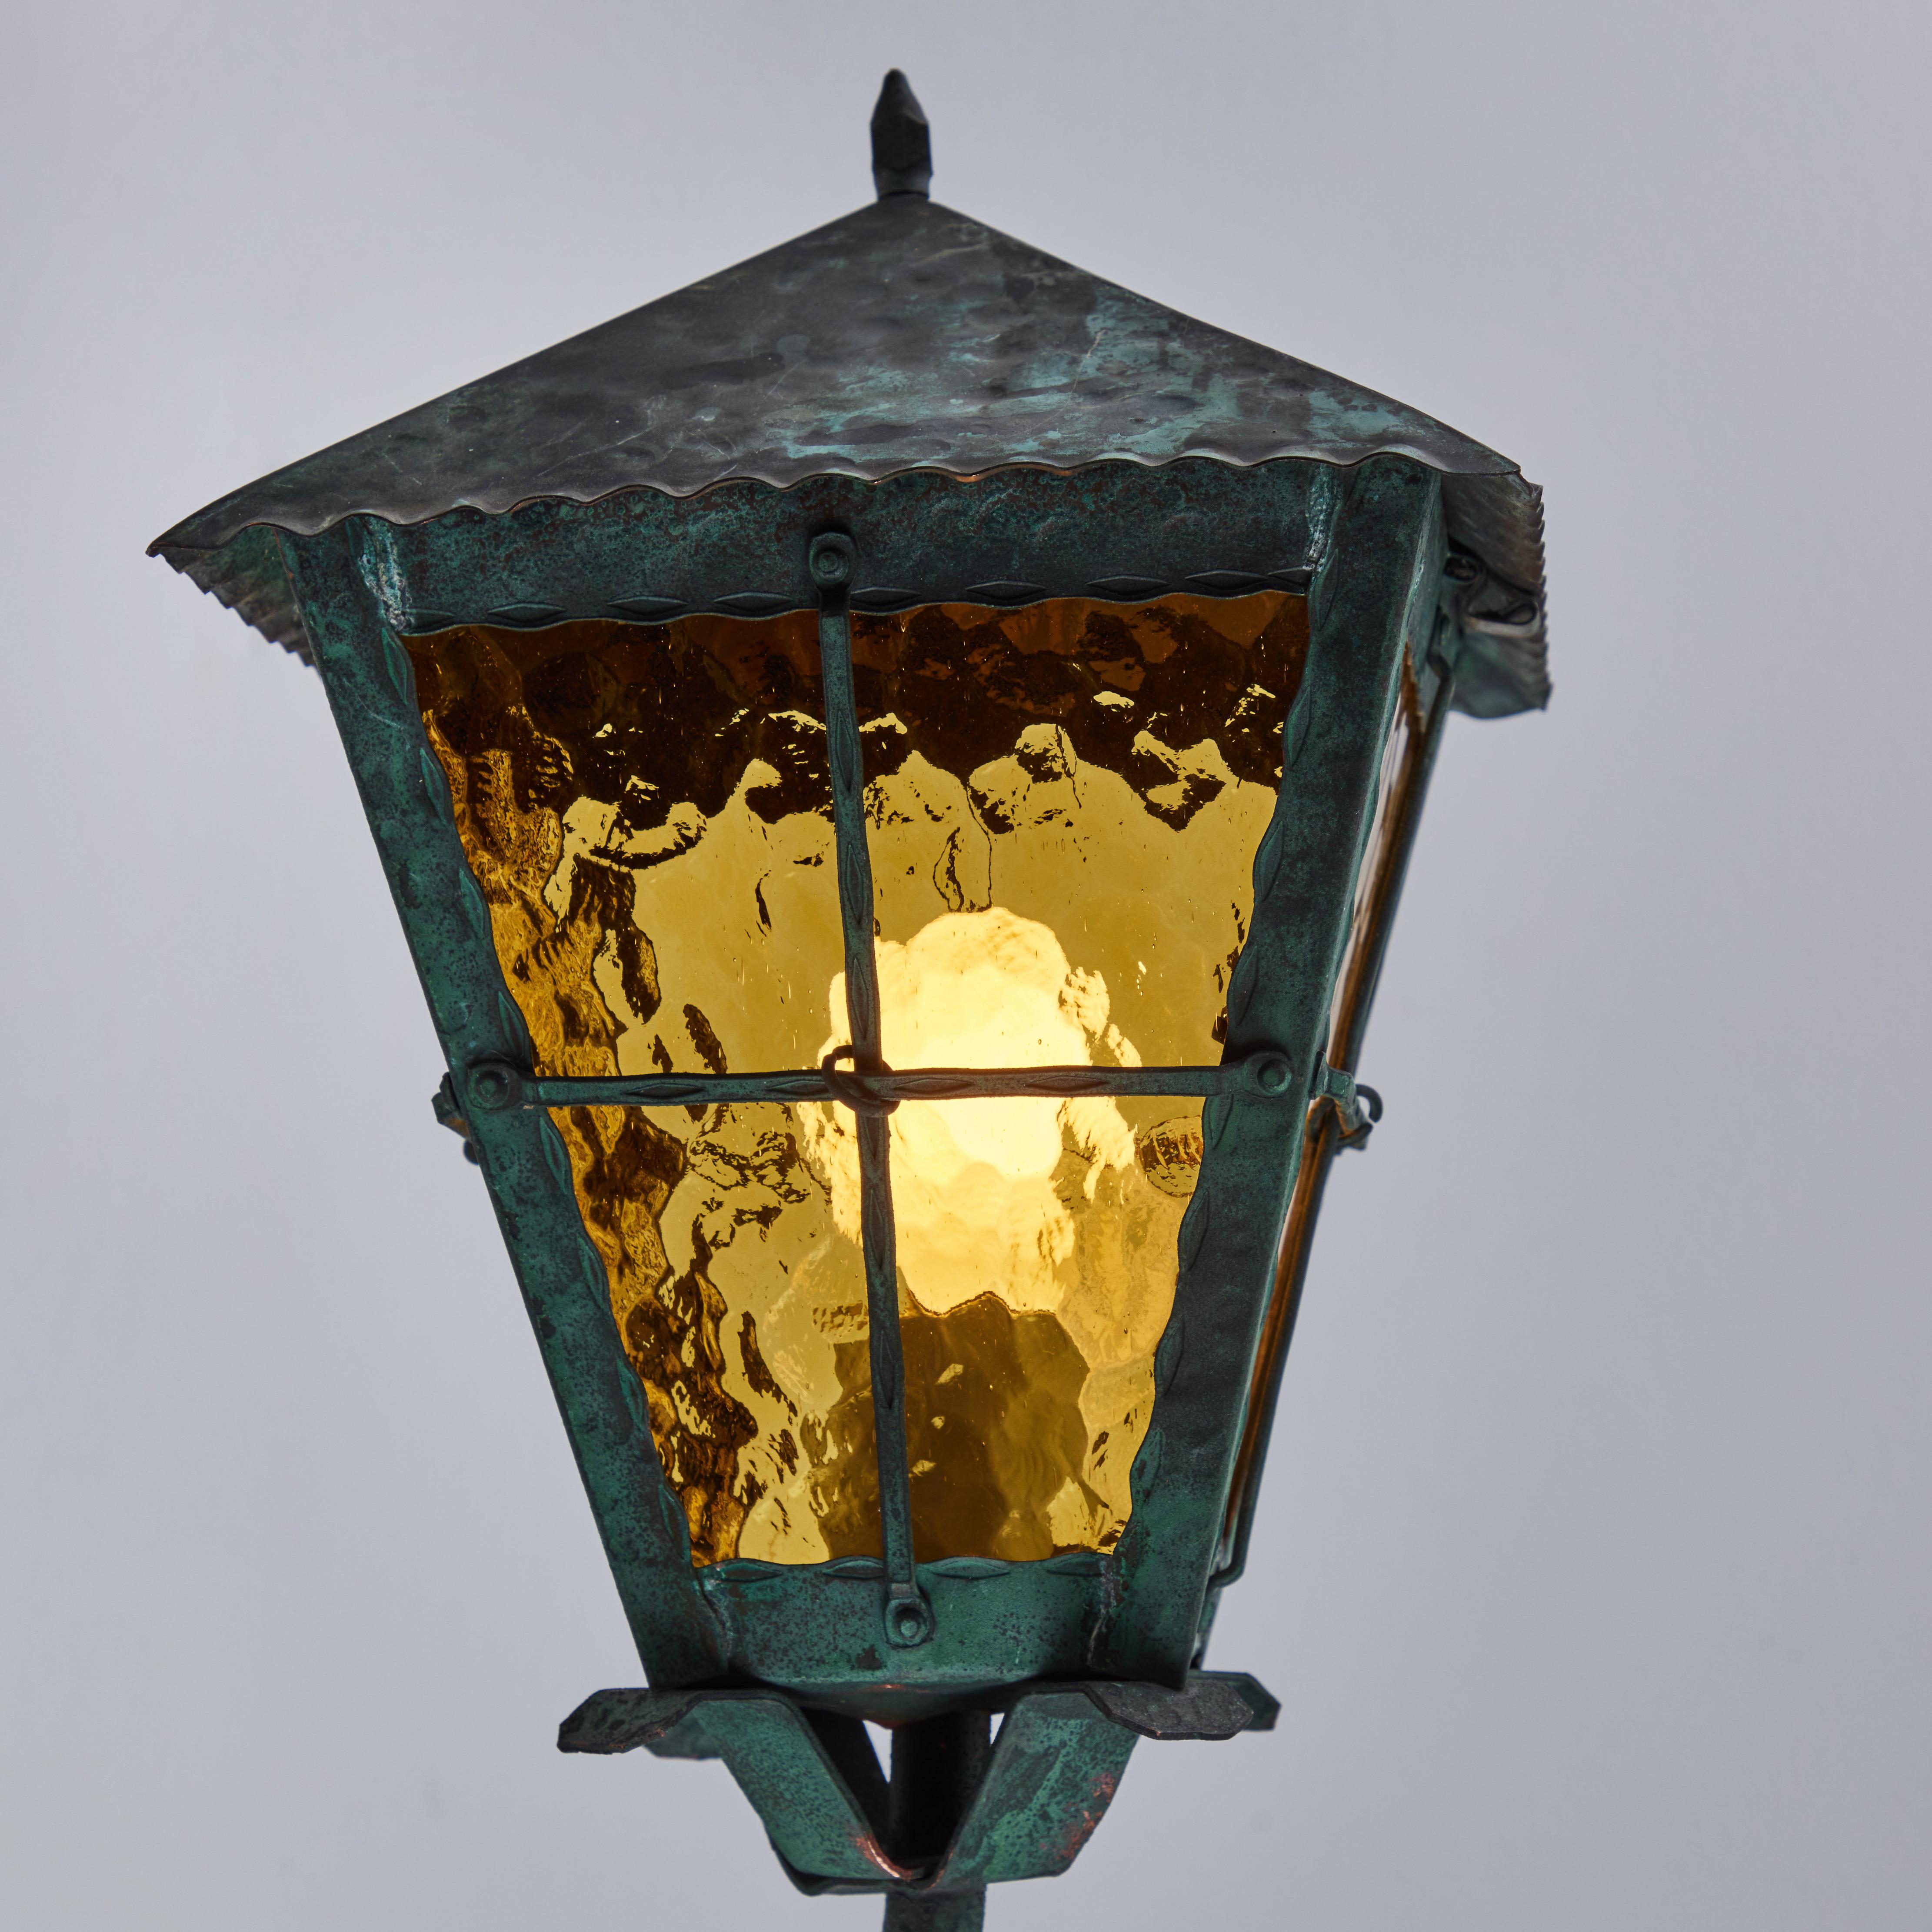 1950s outdoor lighting